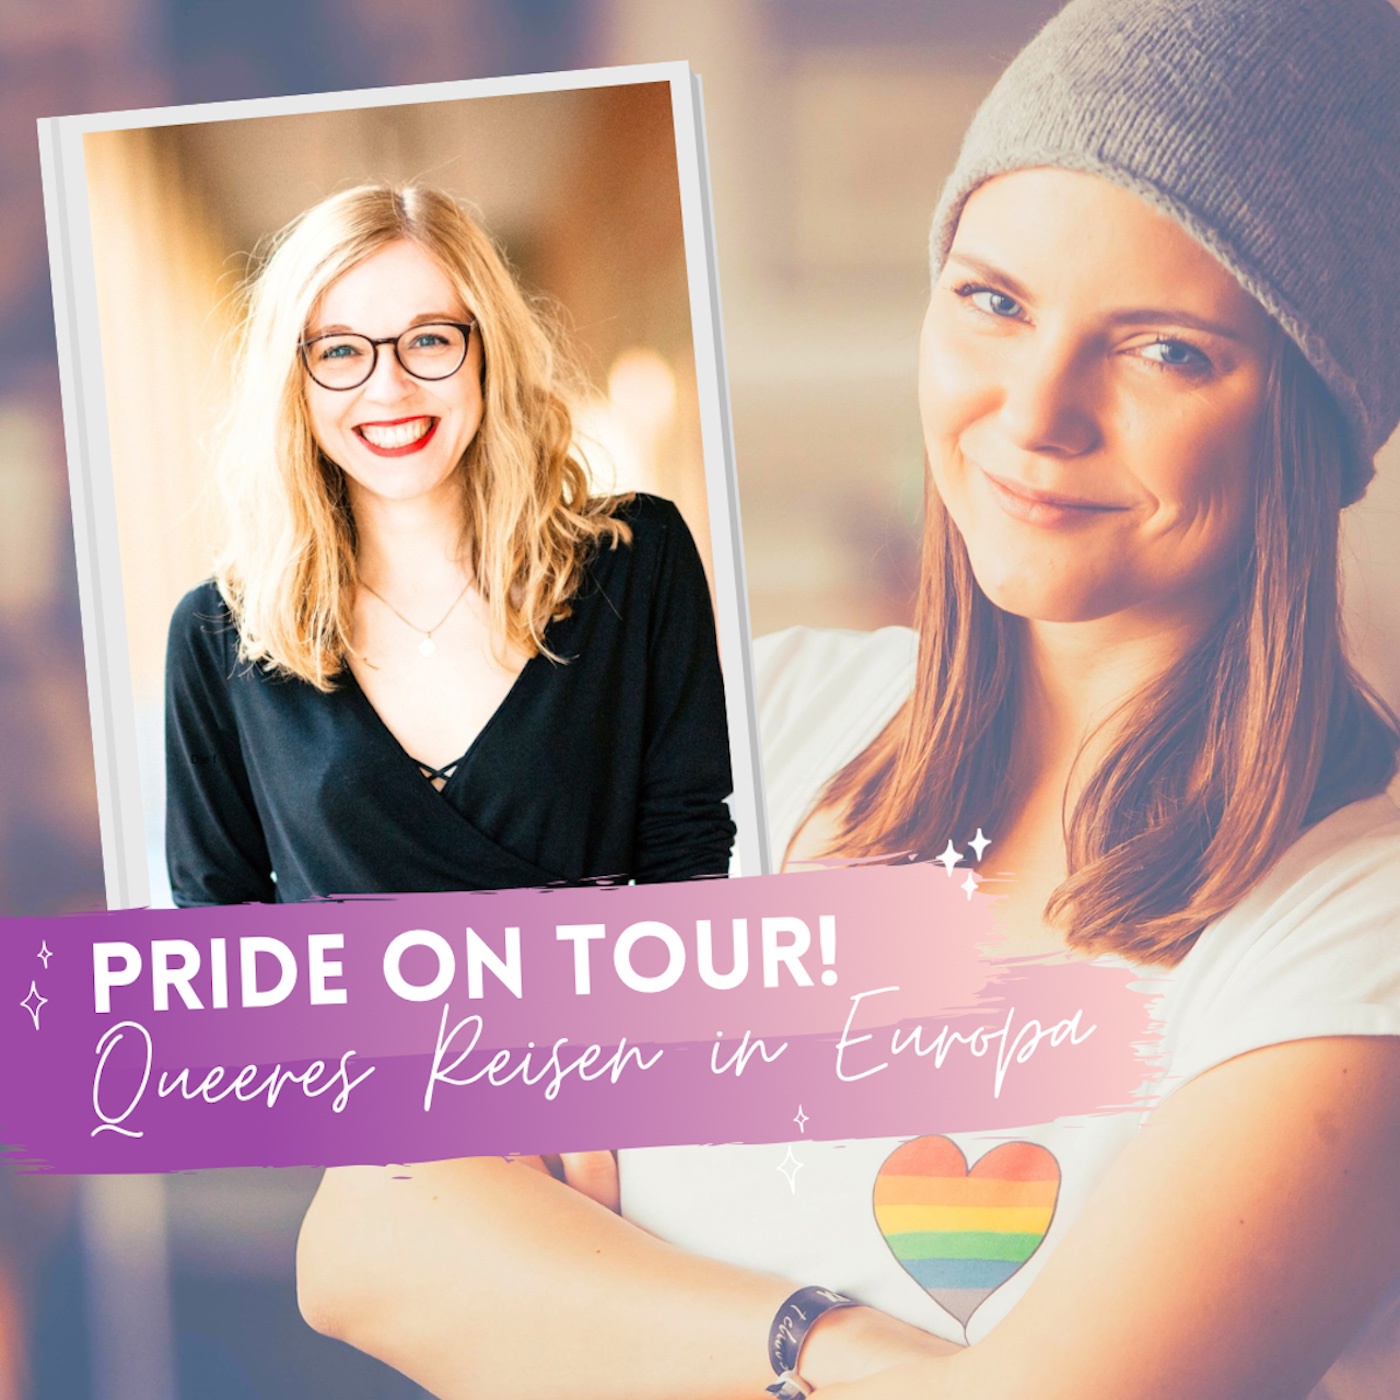 Queeres Reisen: Pride on Tour